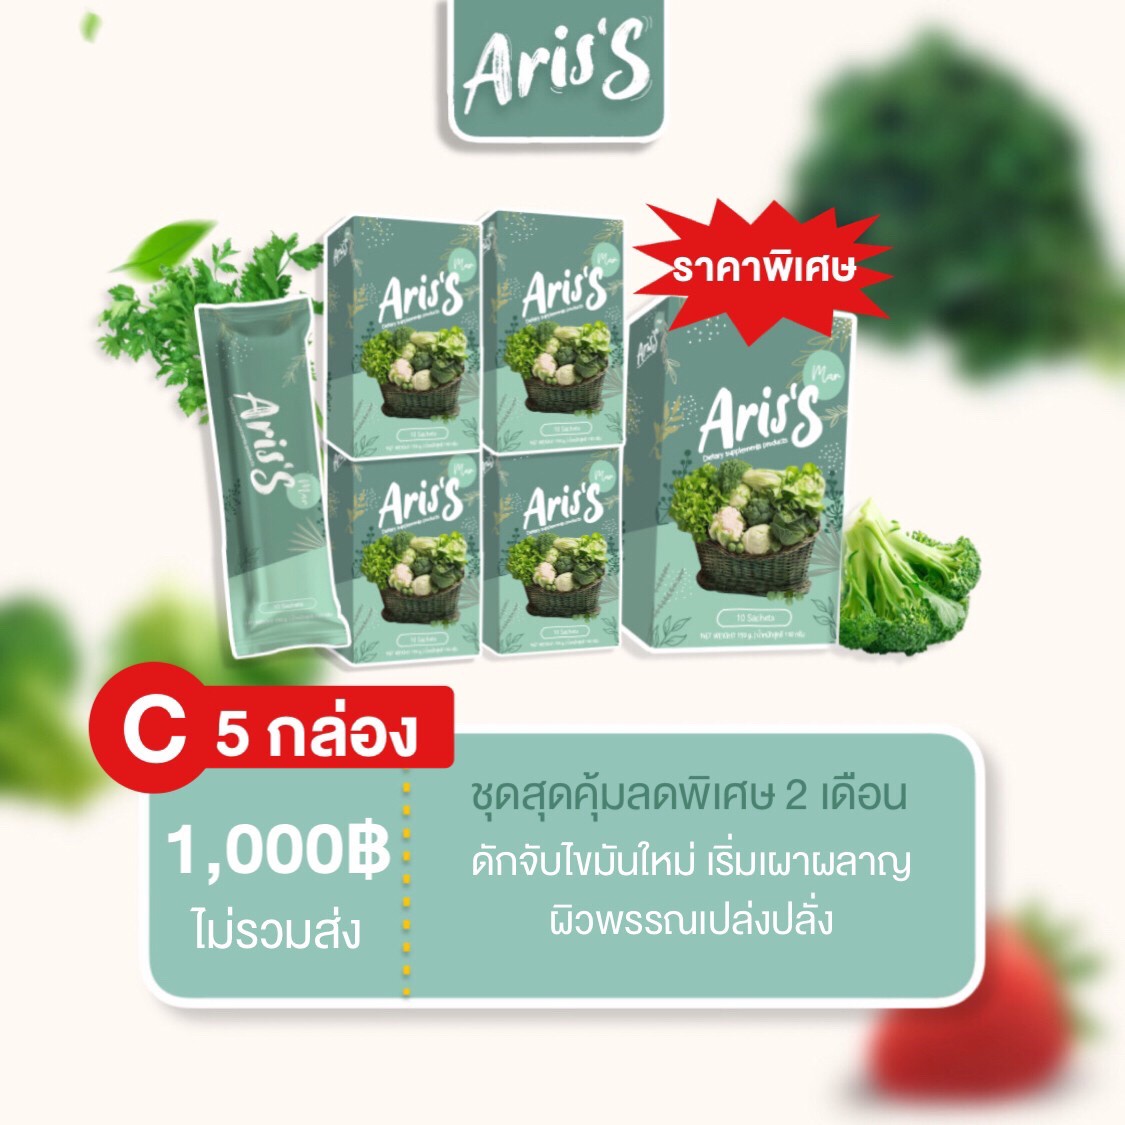 [พร้อมส่ง ส่งไว ]  Aris's เอริสเอส น้ำผักดีท็อค น้องผงผัก ผงผัก5 กล่องมี [5x10 ซอง]  เจ้าแรกในไทย